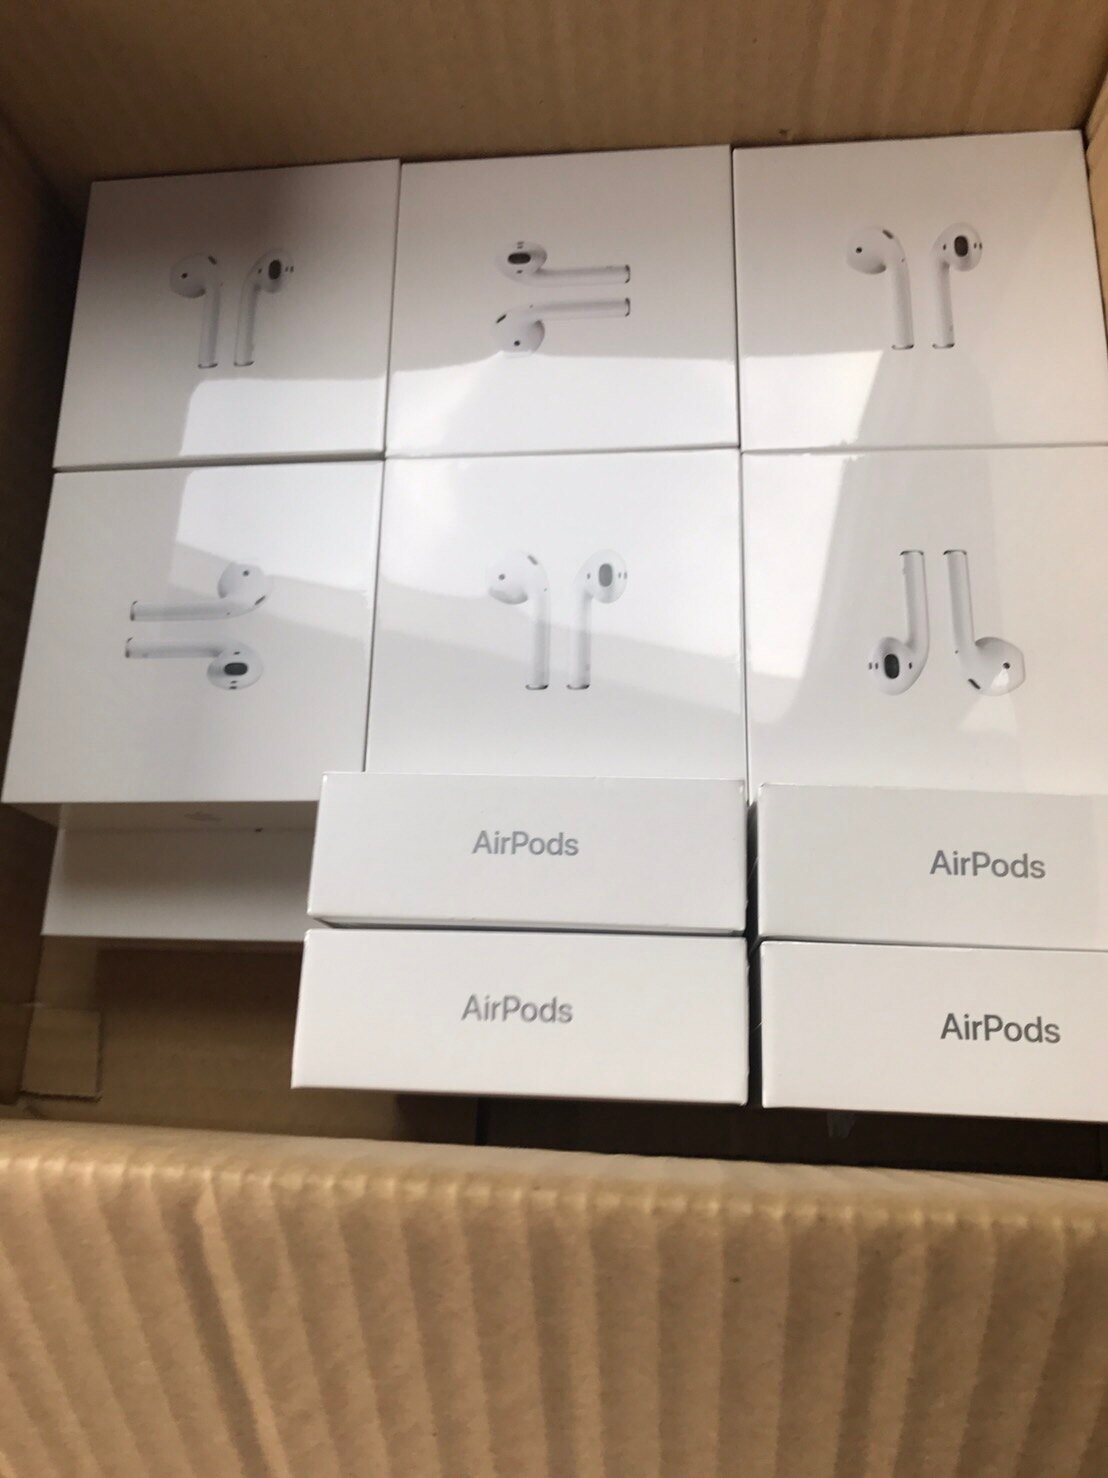 Apple AirPods((2))-(有線充電盒版)-(無線充電盒版)-台灣公司貨蘋果藍牙耳機(((現貨)))24小時快速到貨-免運費。人氣店家展翔通訊的配件有最棒的商品。快到日本NO.1的Raku